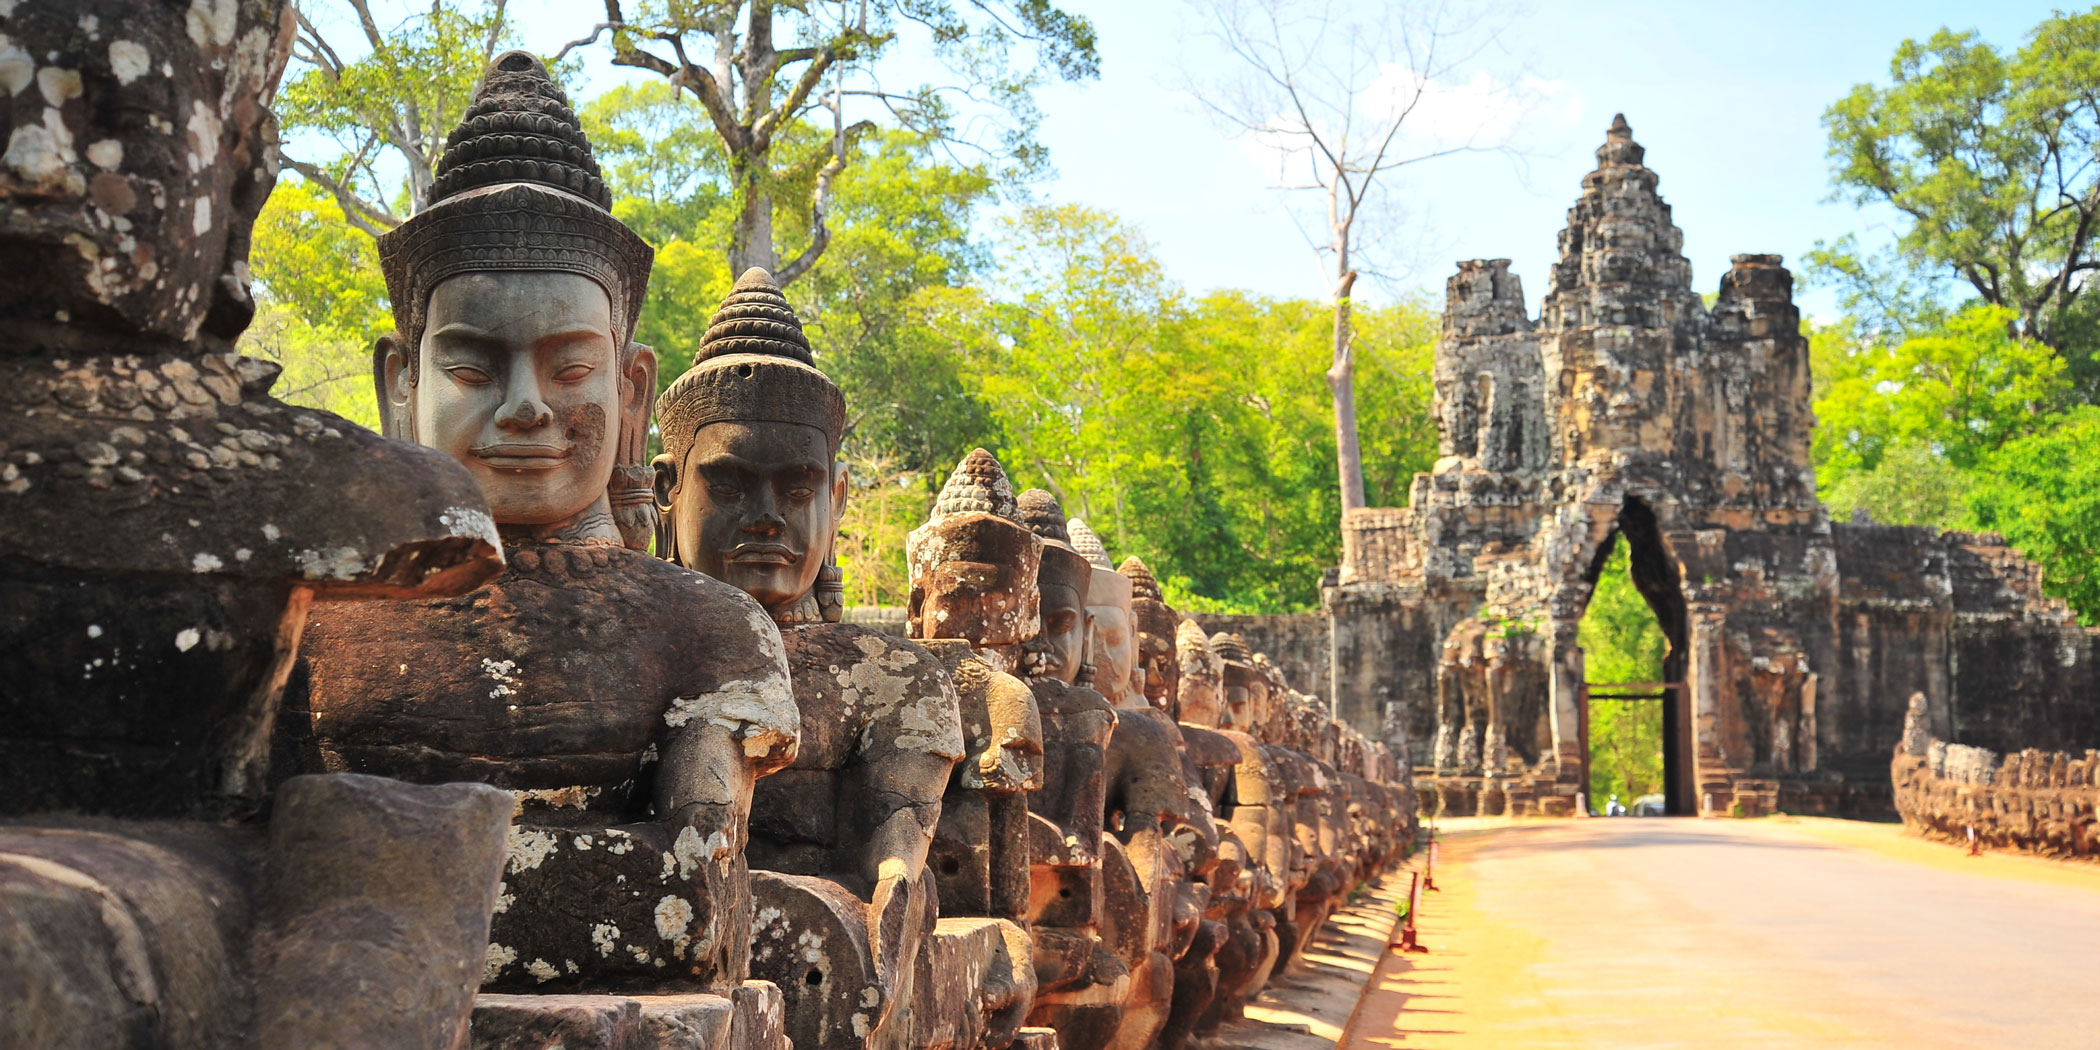 Cổng nam Angkor Thom